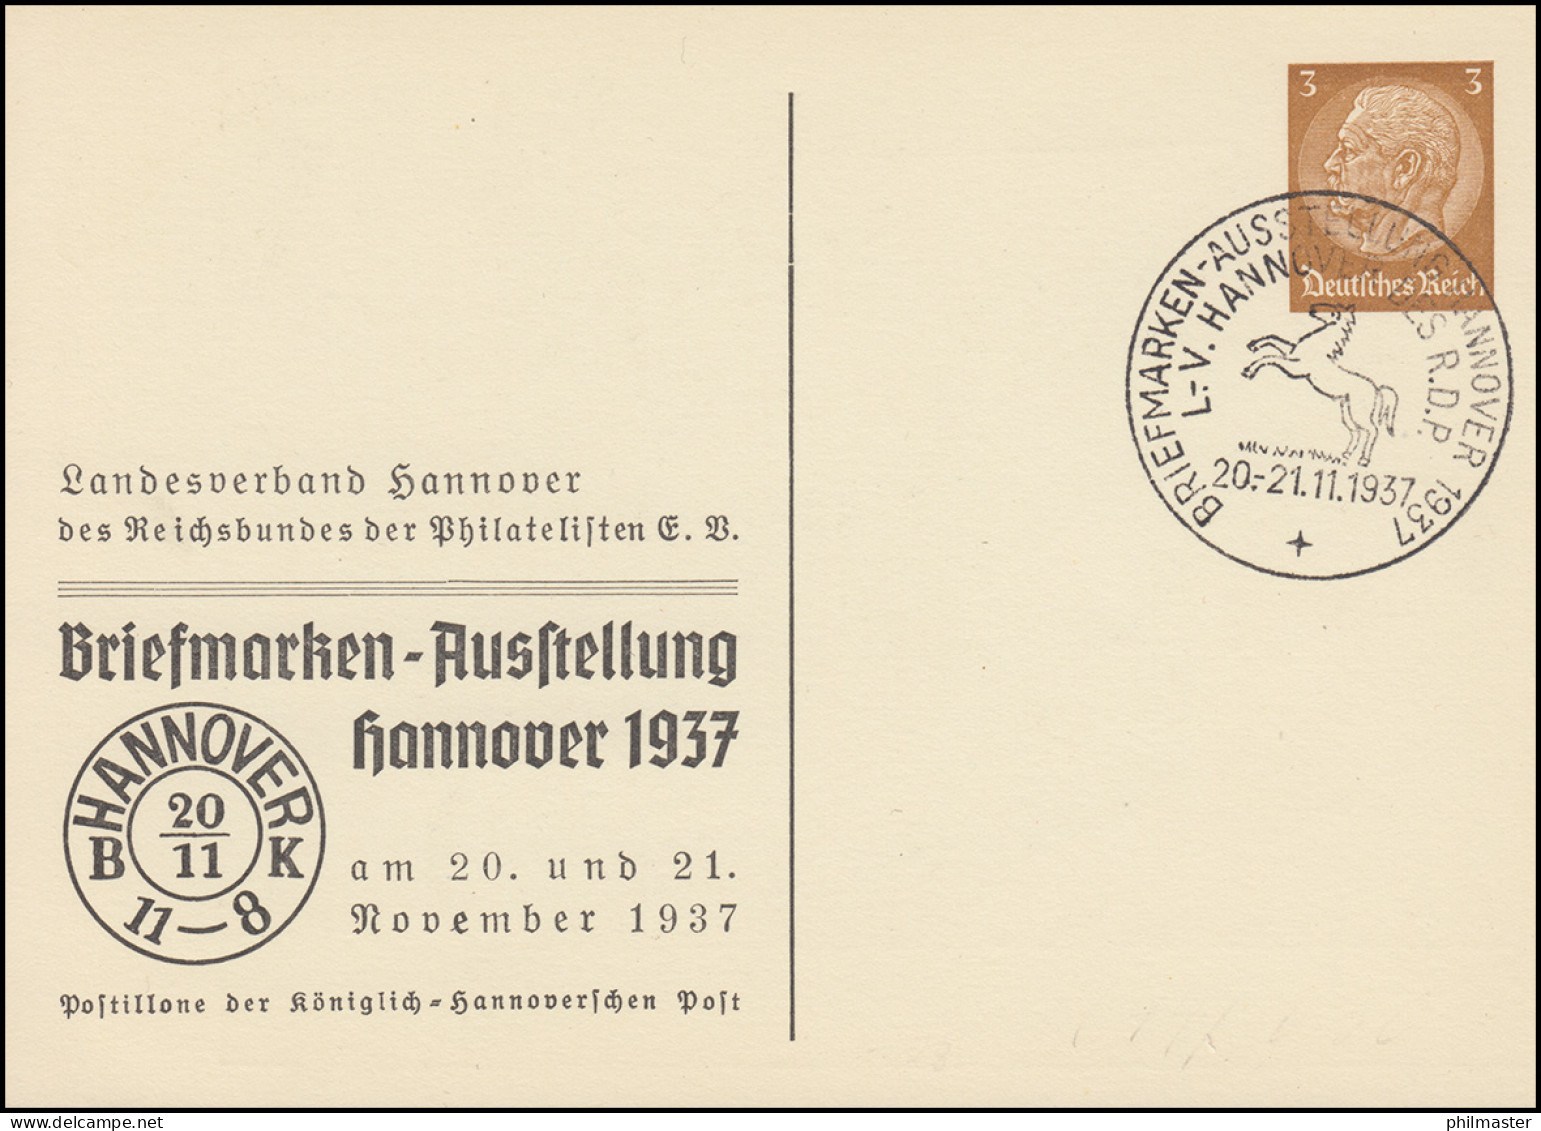 PP 122 Briefmarkenausstellung Hannover Passender SSt 20.-21.11.1937 Pferd - Philatelic Exhibitions